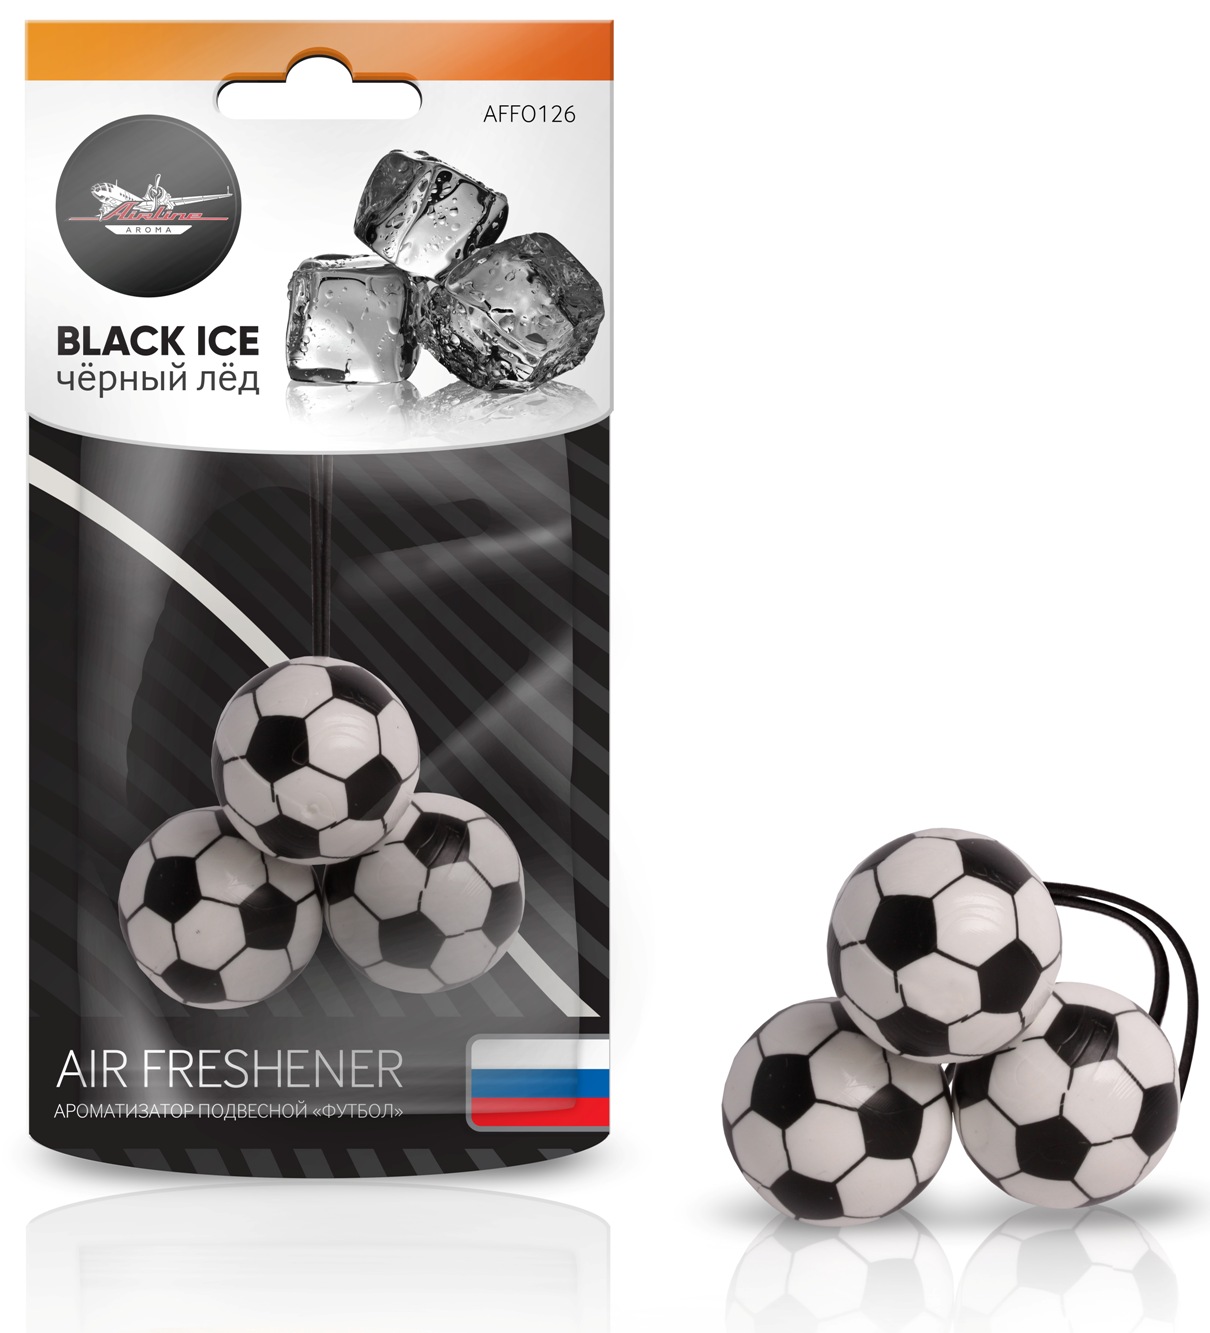 Ароматизатор подвесной "Футбол"" черный лед(доставка 2-3 часа)"